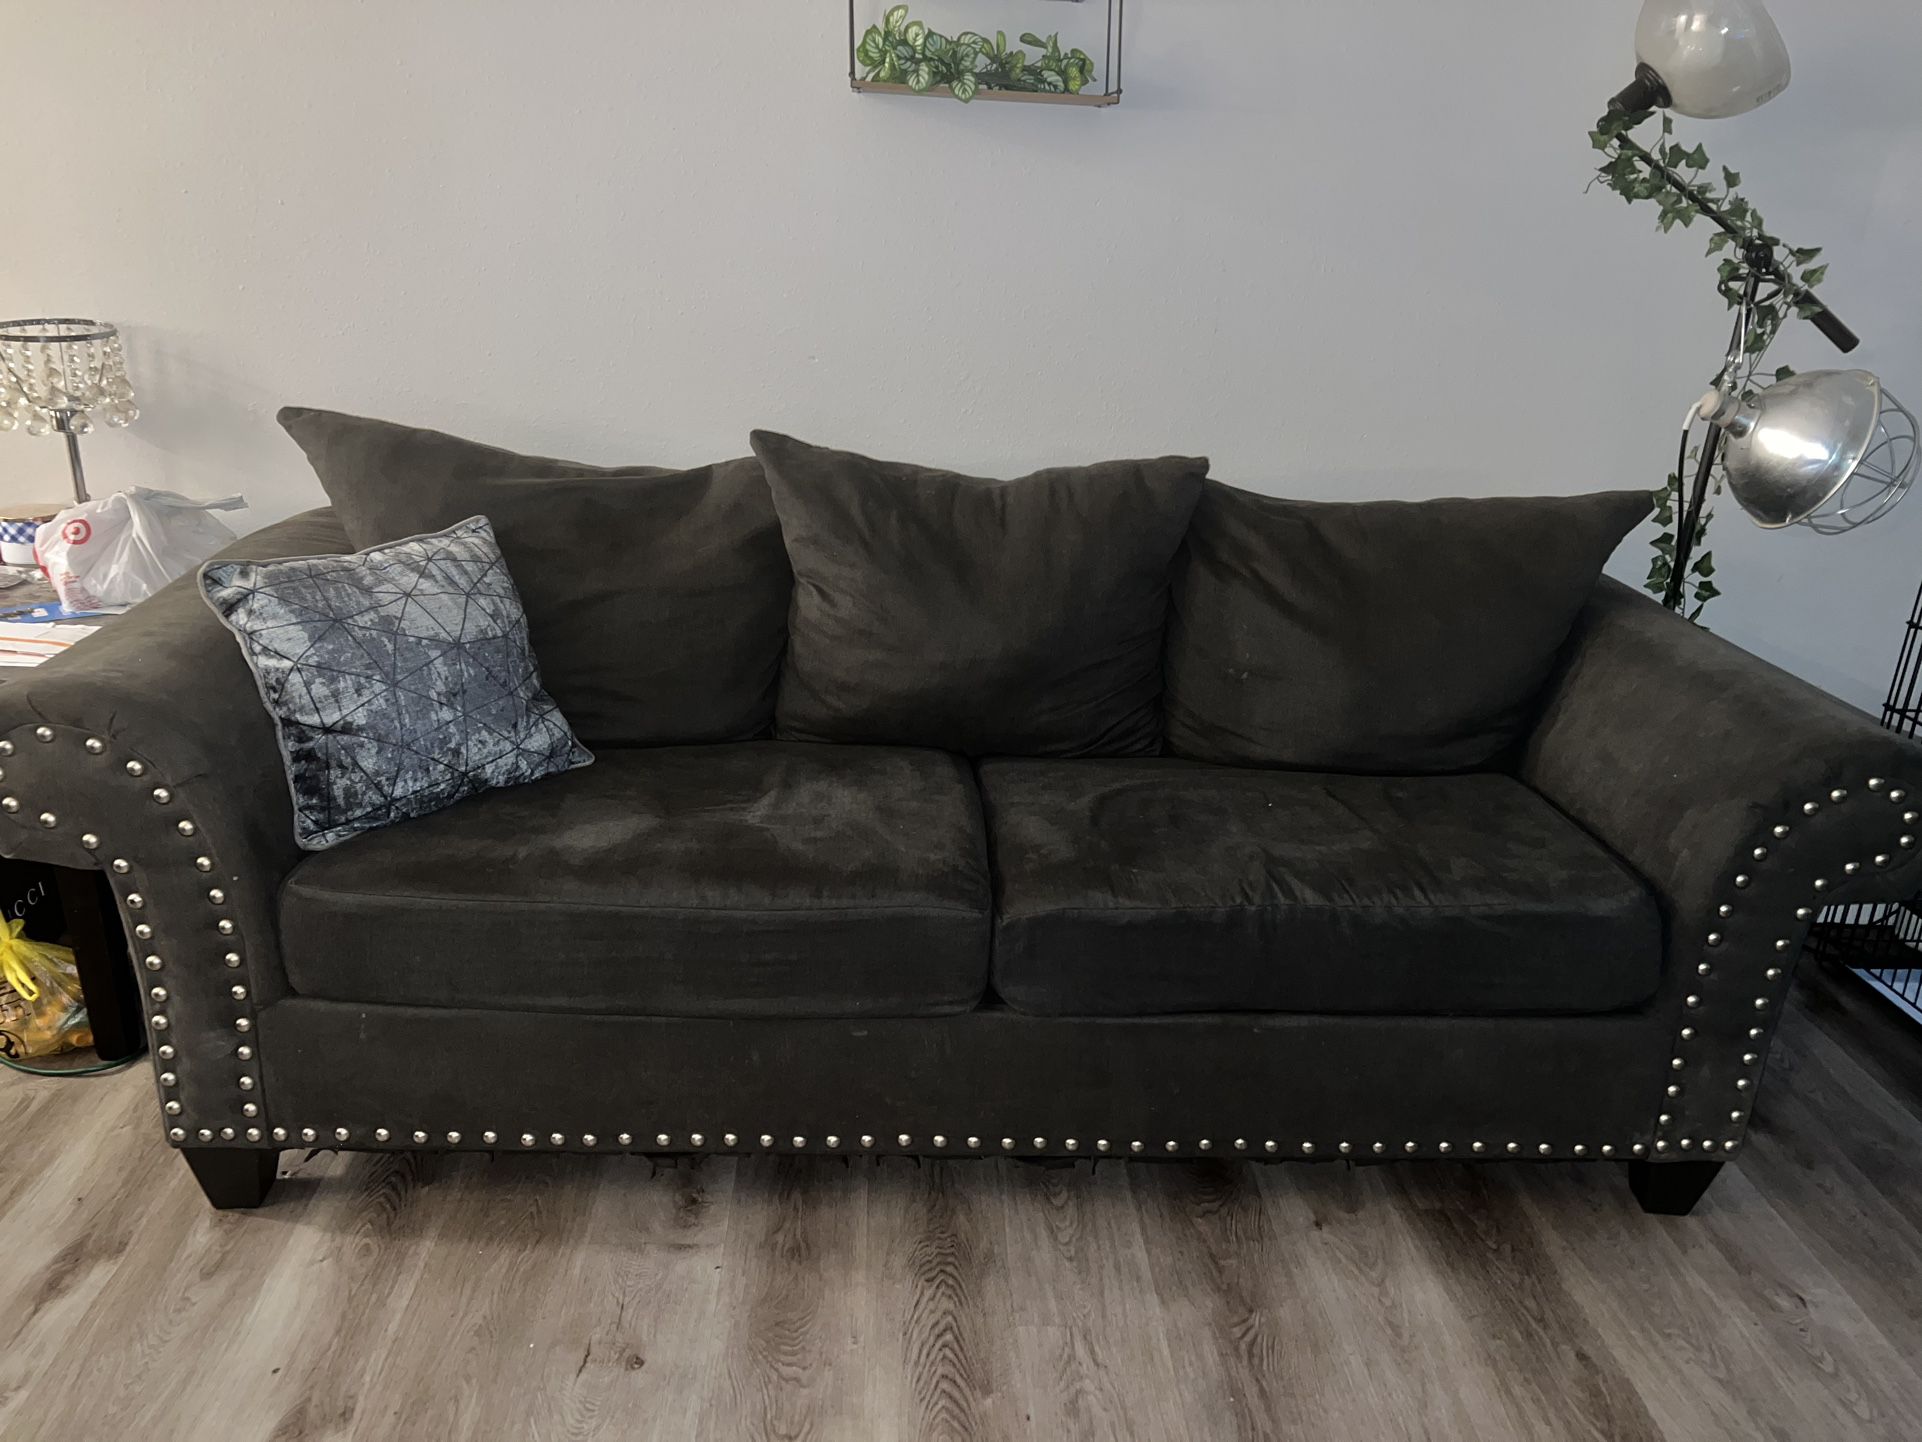 Sofa w/ Studs $350